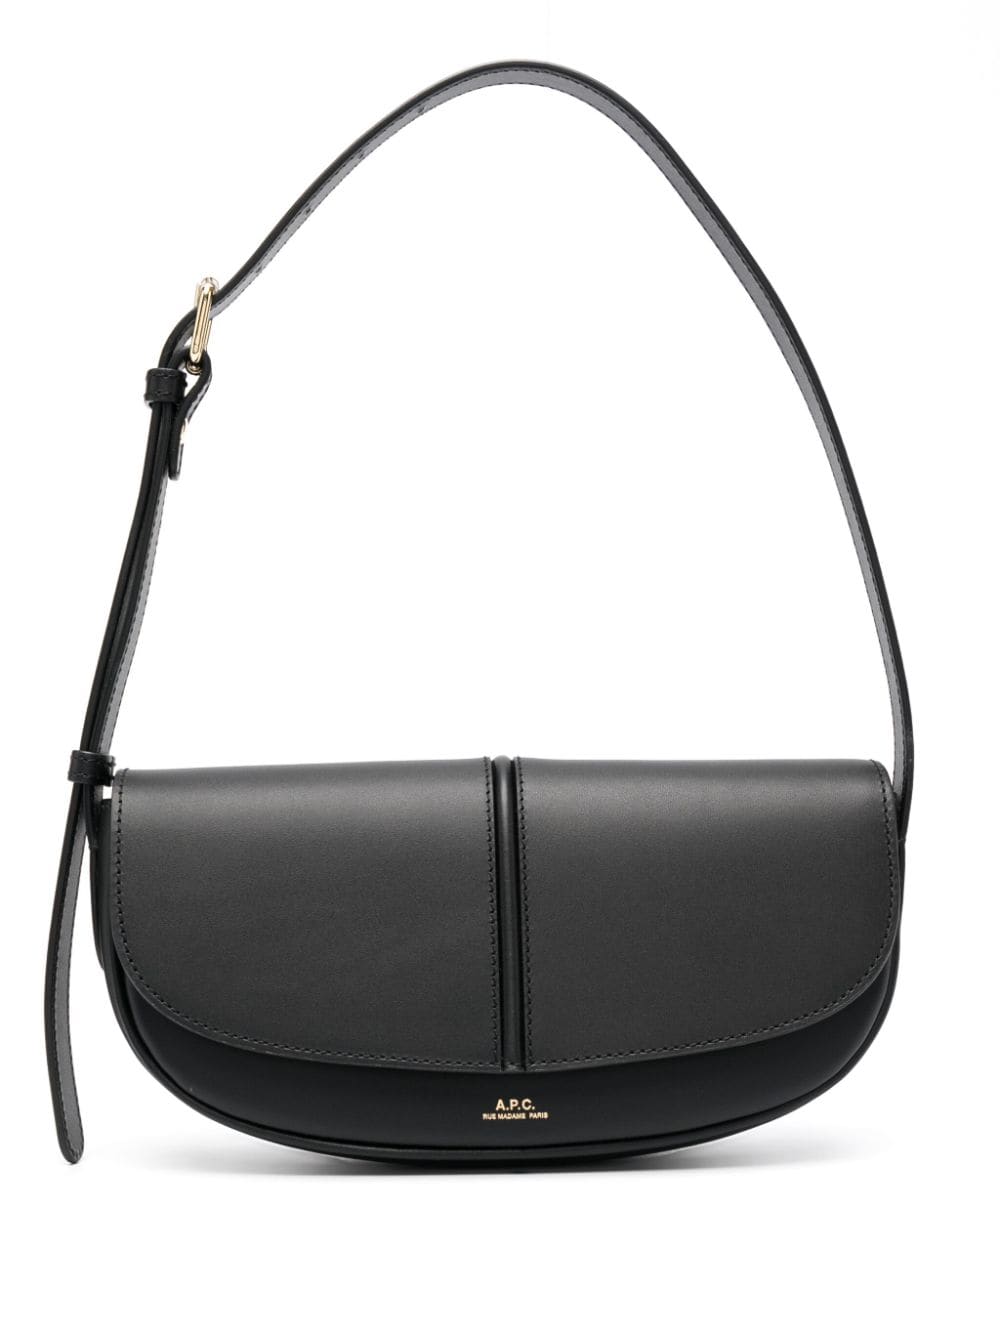 A.P.C. Betty leather shoulder bag - Black von A.P.C.